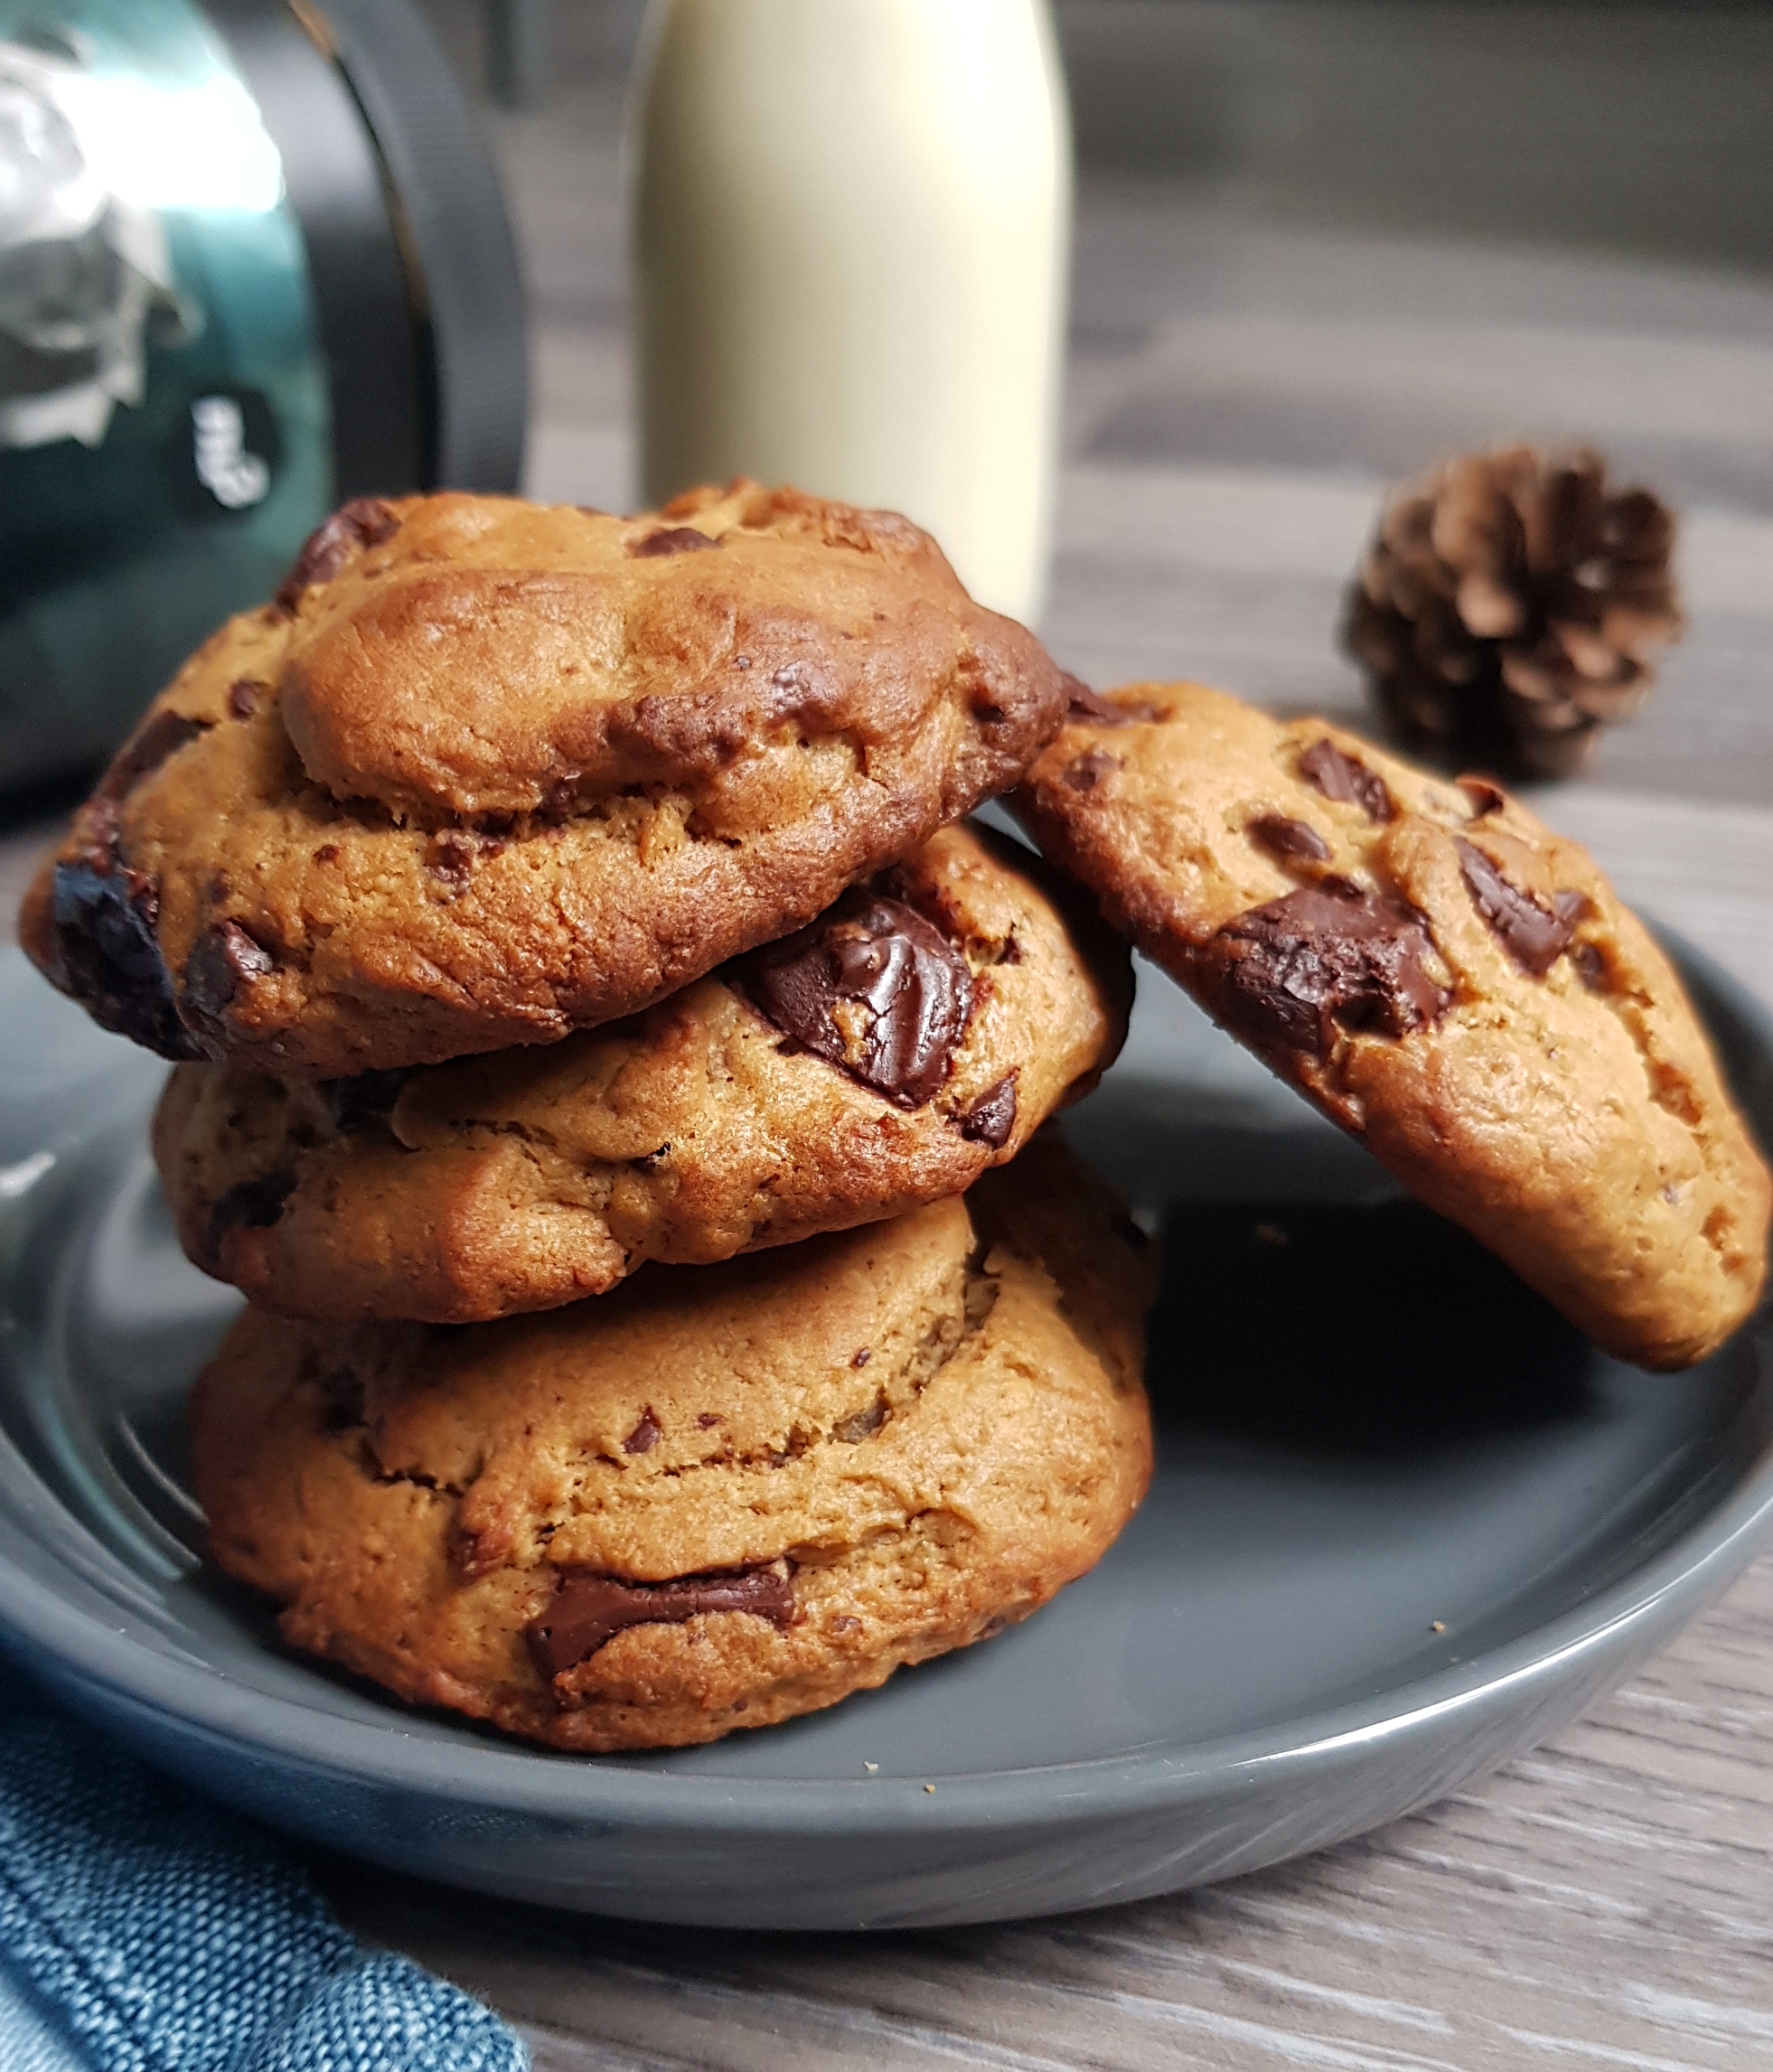 Cookies au beurre de cacahuètes & M&M's® • Recette de Lolo et sa tambouille